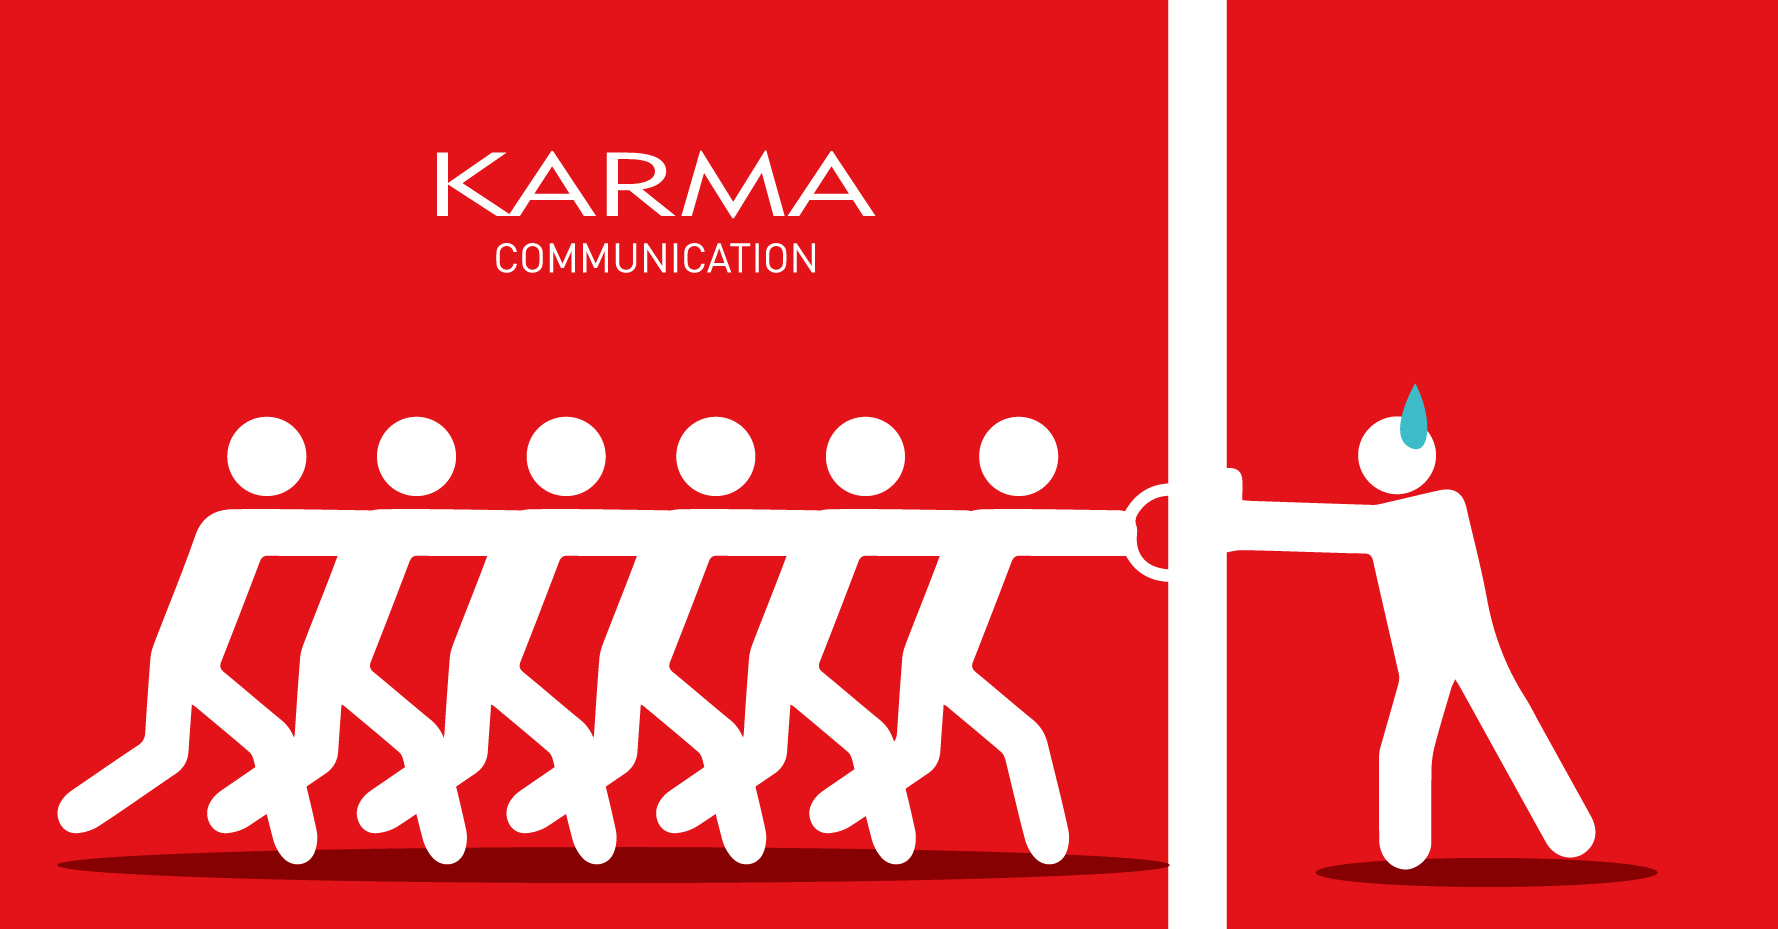 Karma Communication - Siamo tornate dalle vacanze